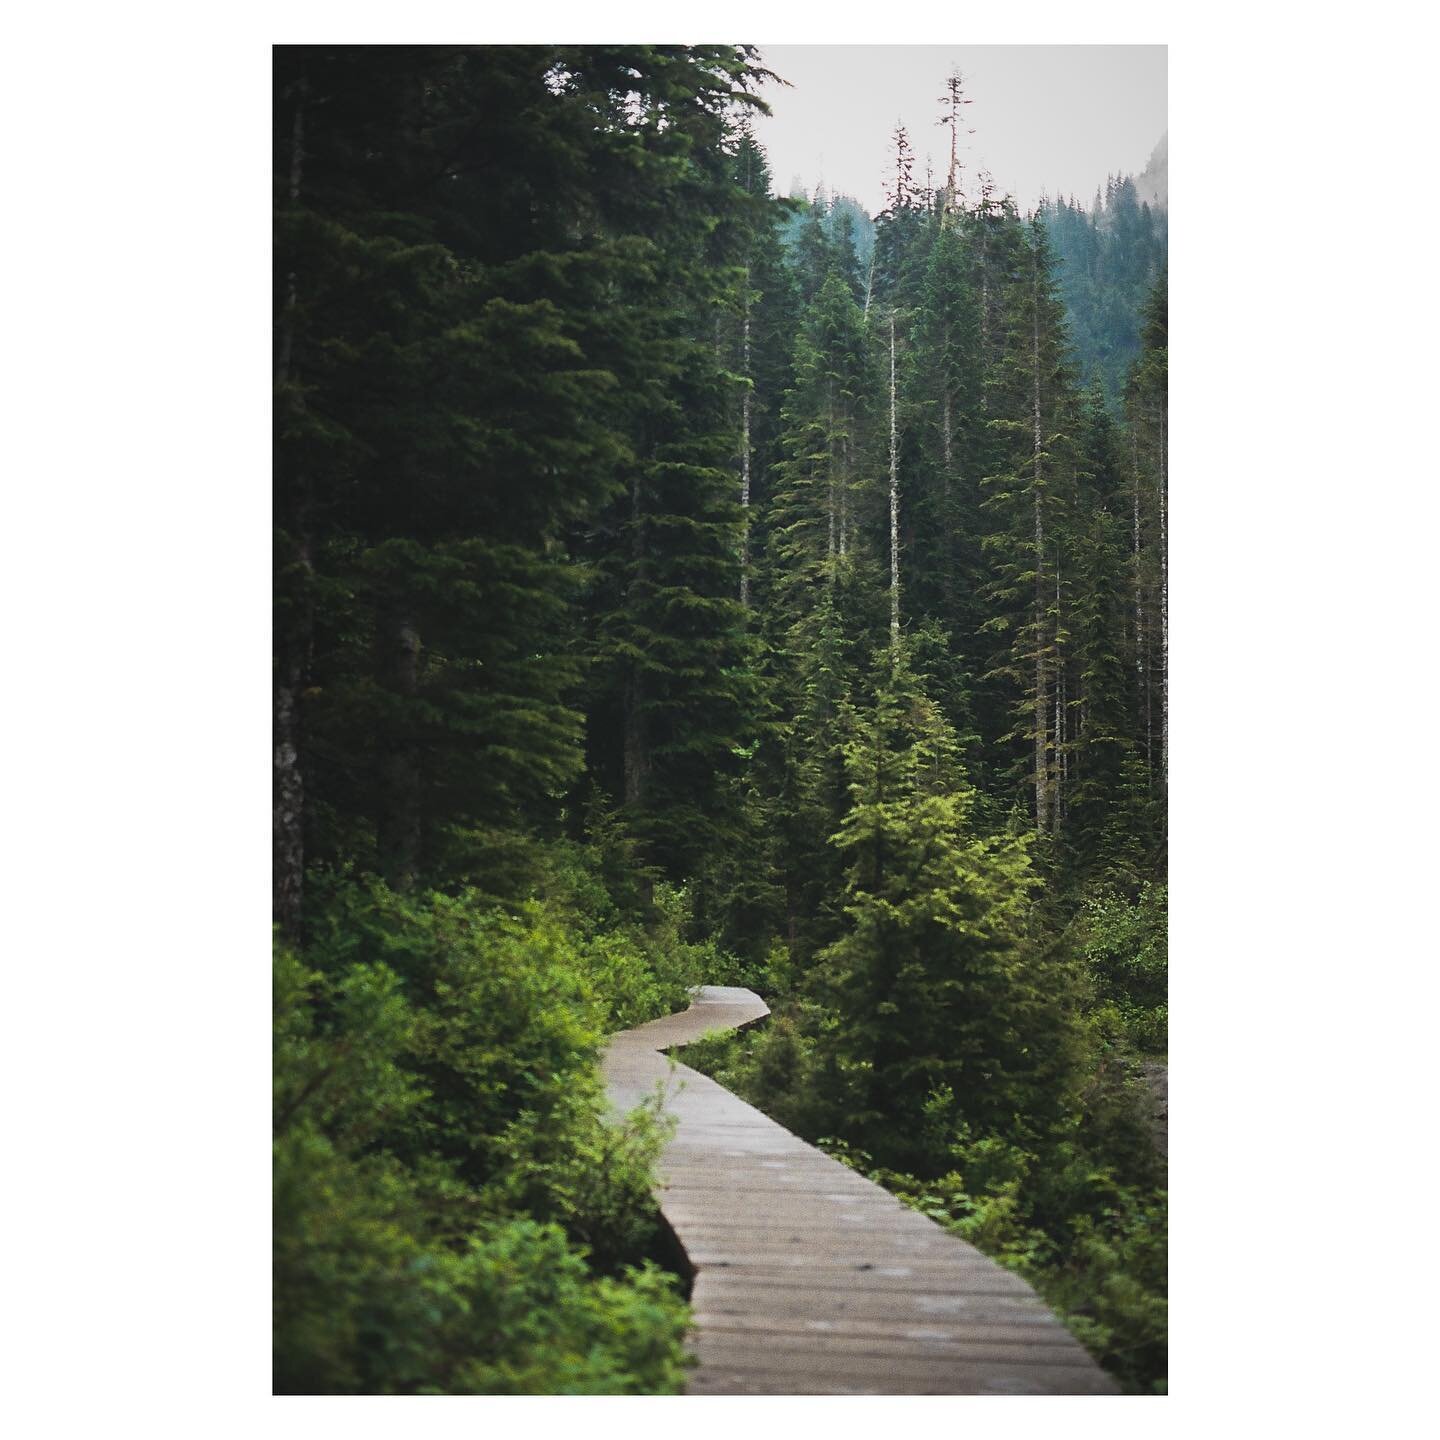 A trail for wanderers. - Kodak Portra 400 on Olympus OM-1